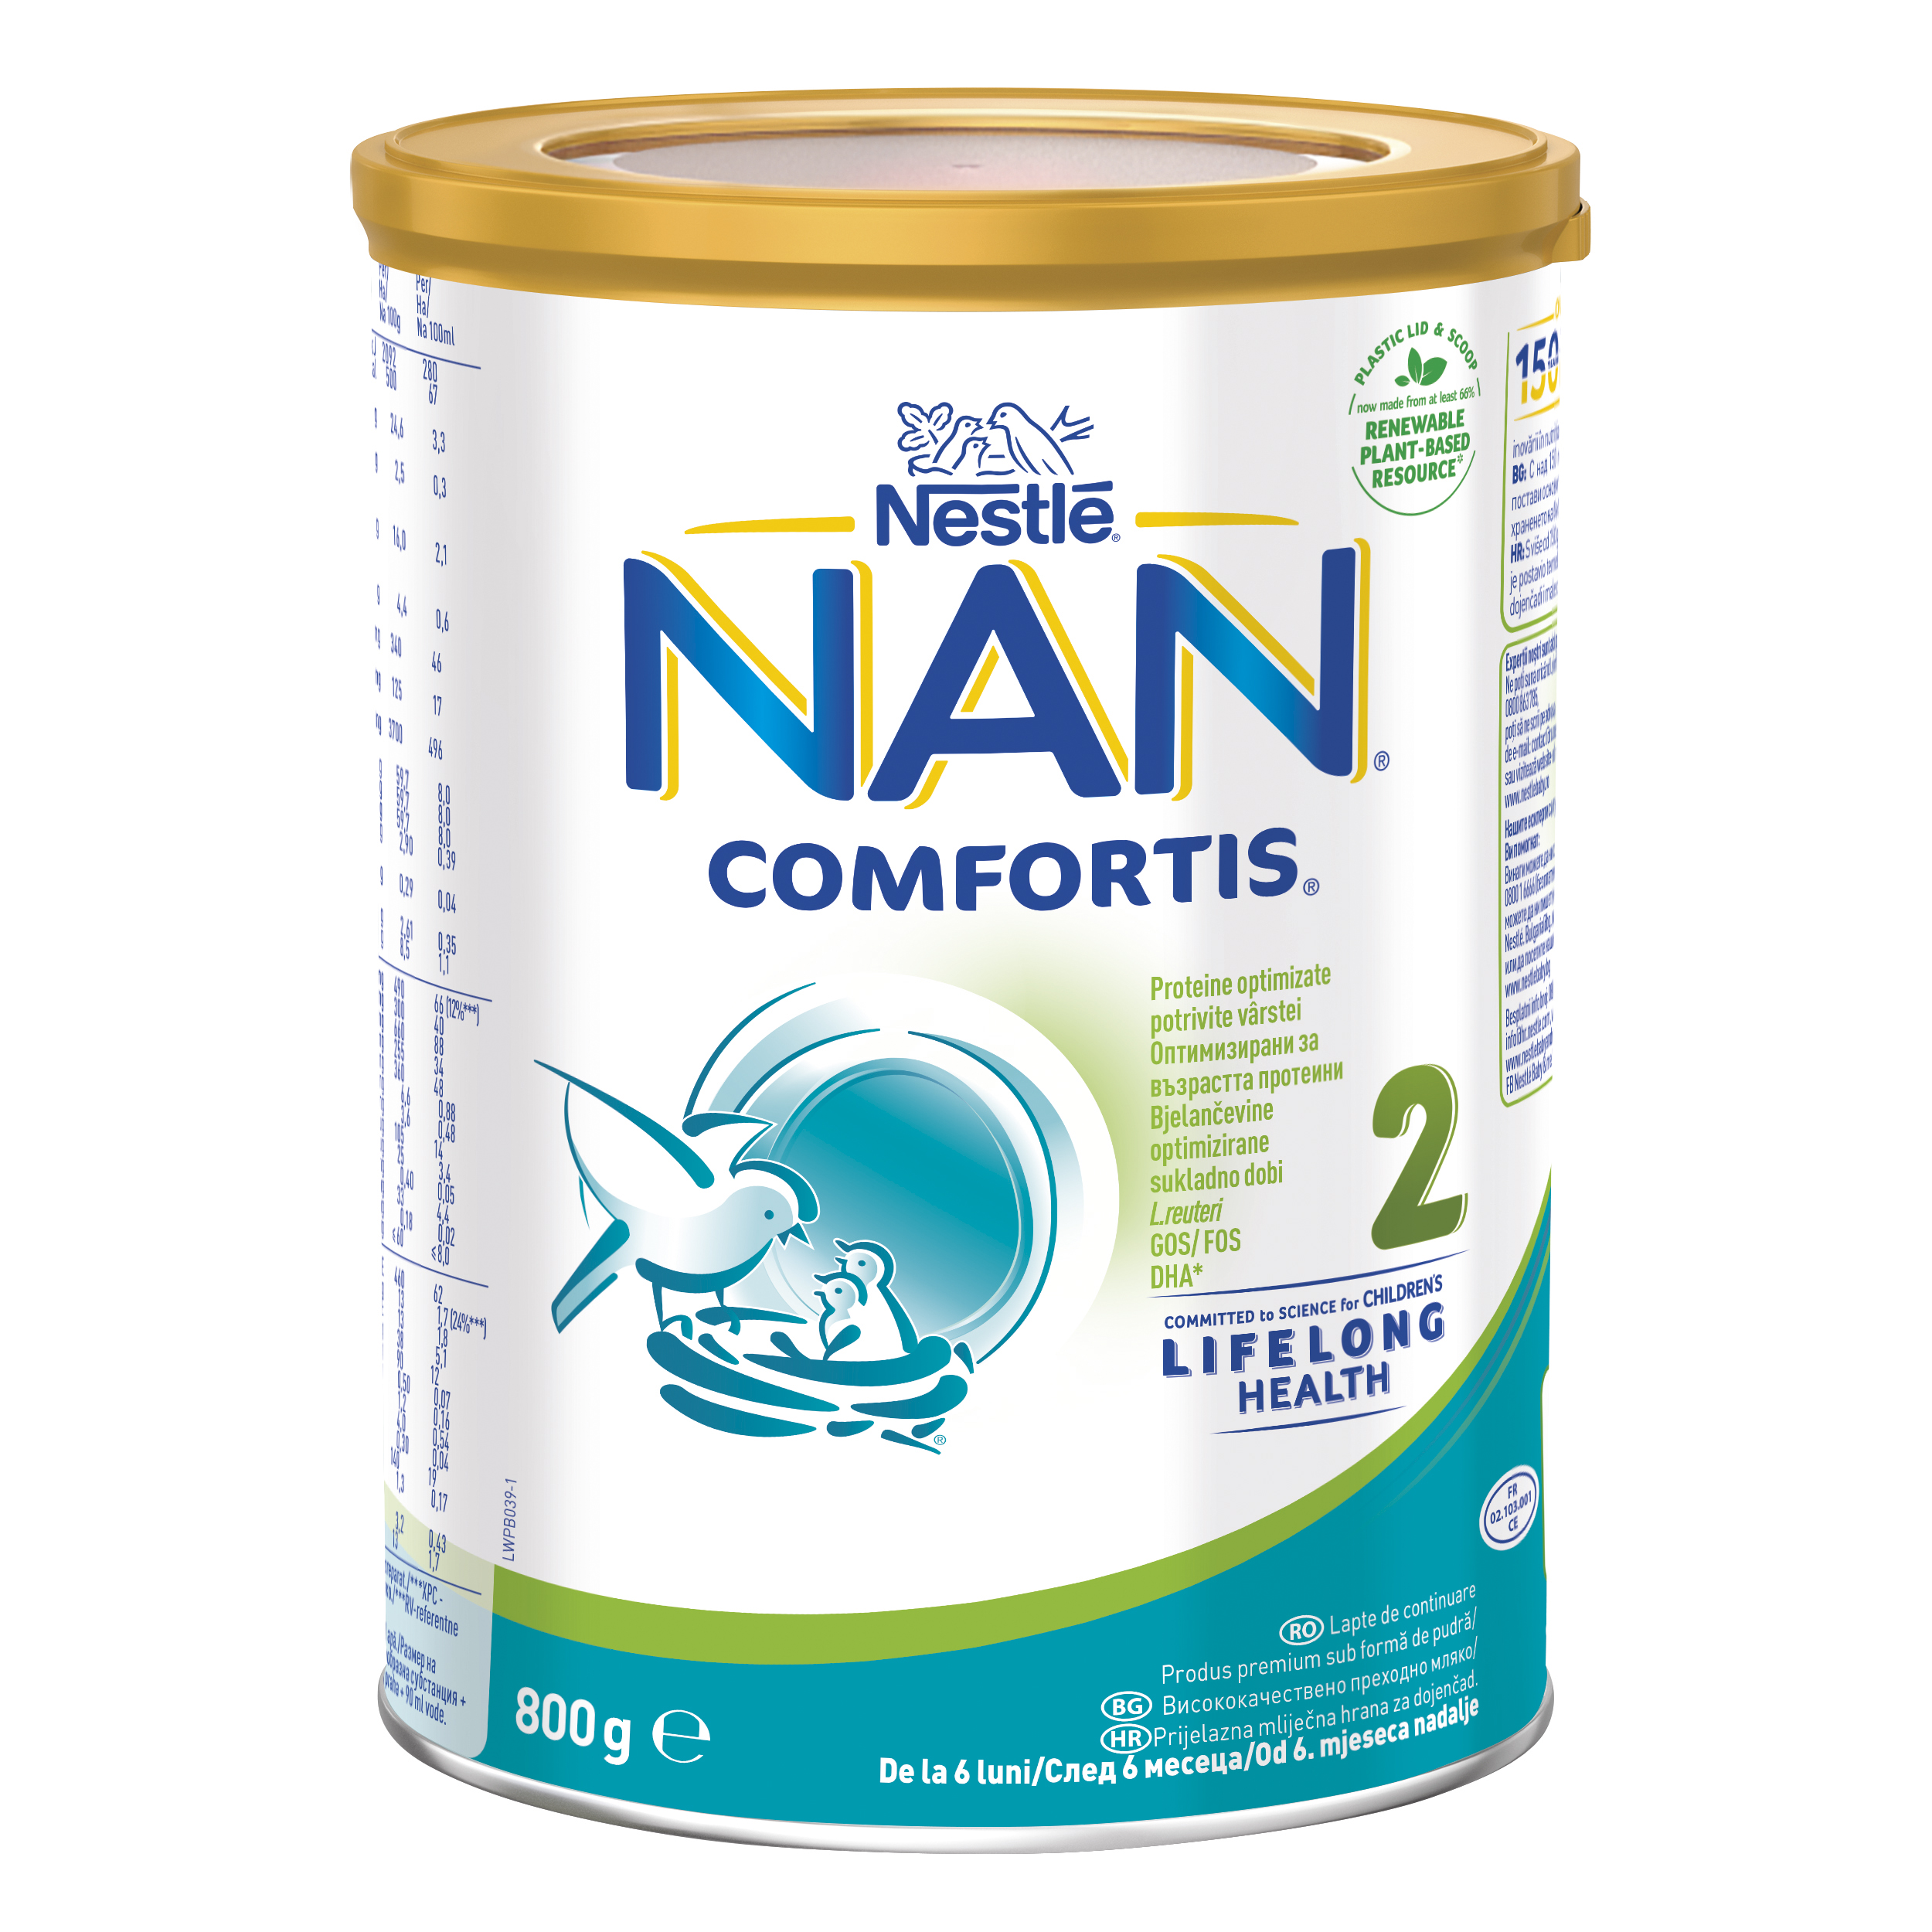 Nestlé Nan Supreme Pro 2 800g